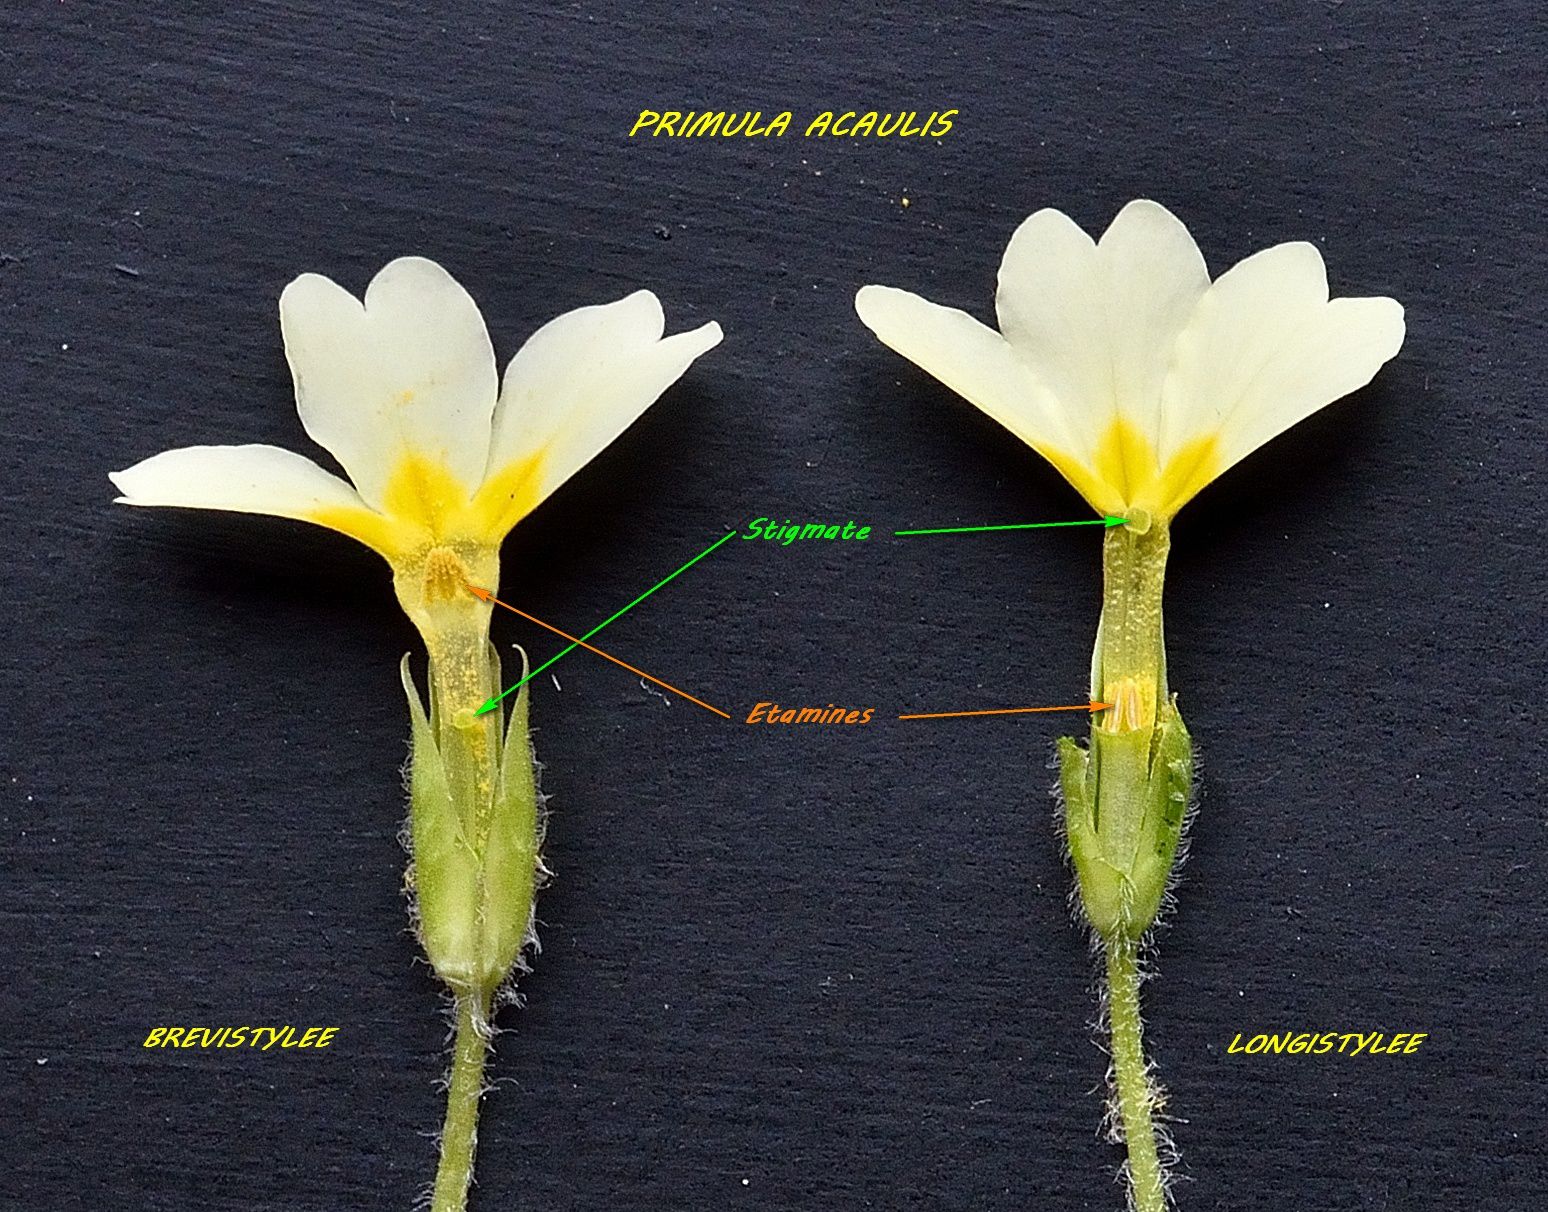 Primula acaulis, en coupe, à droite longistylée, à gauche brevistylée, photo commentée d'André